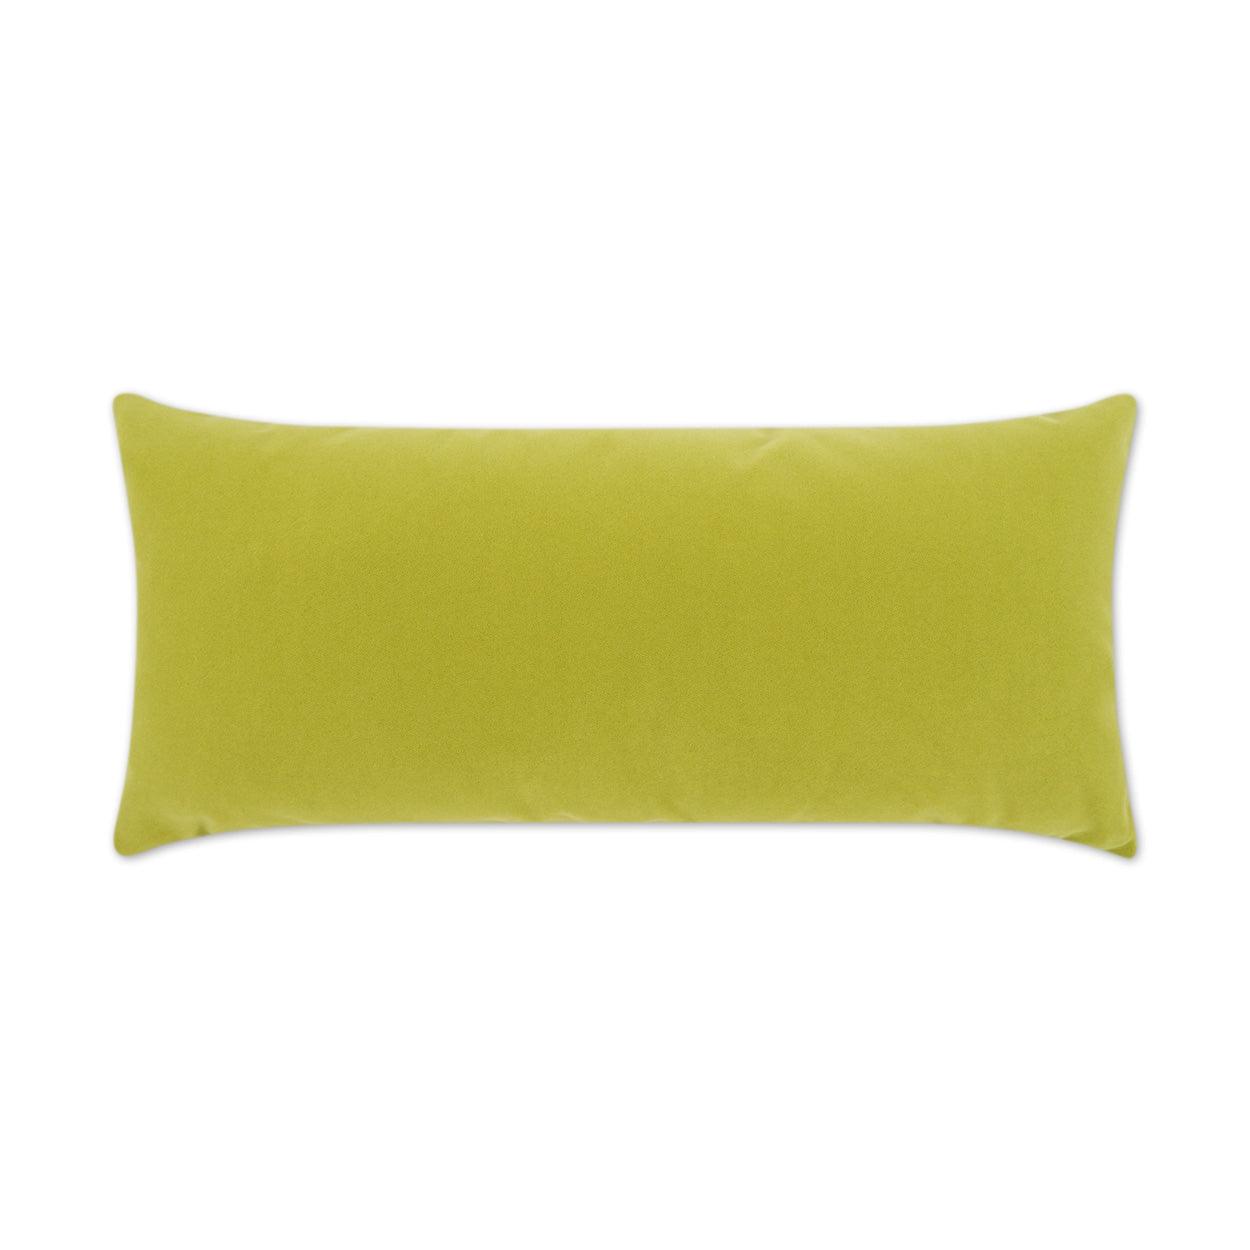 LOOMLAN Outdoor - Outdoor Sundance Lumbar Pillow - Leaf - Outdoor Pillows